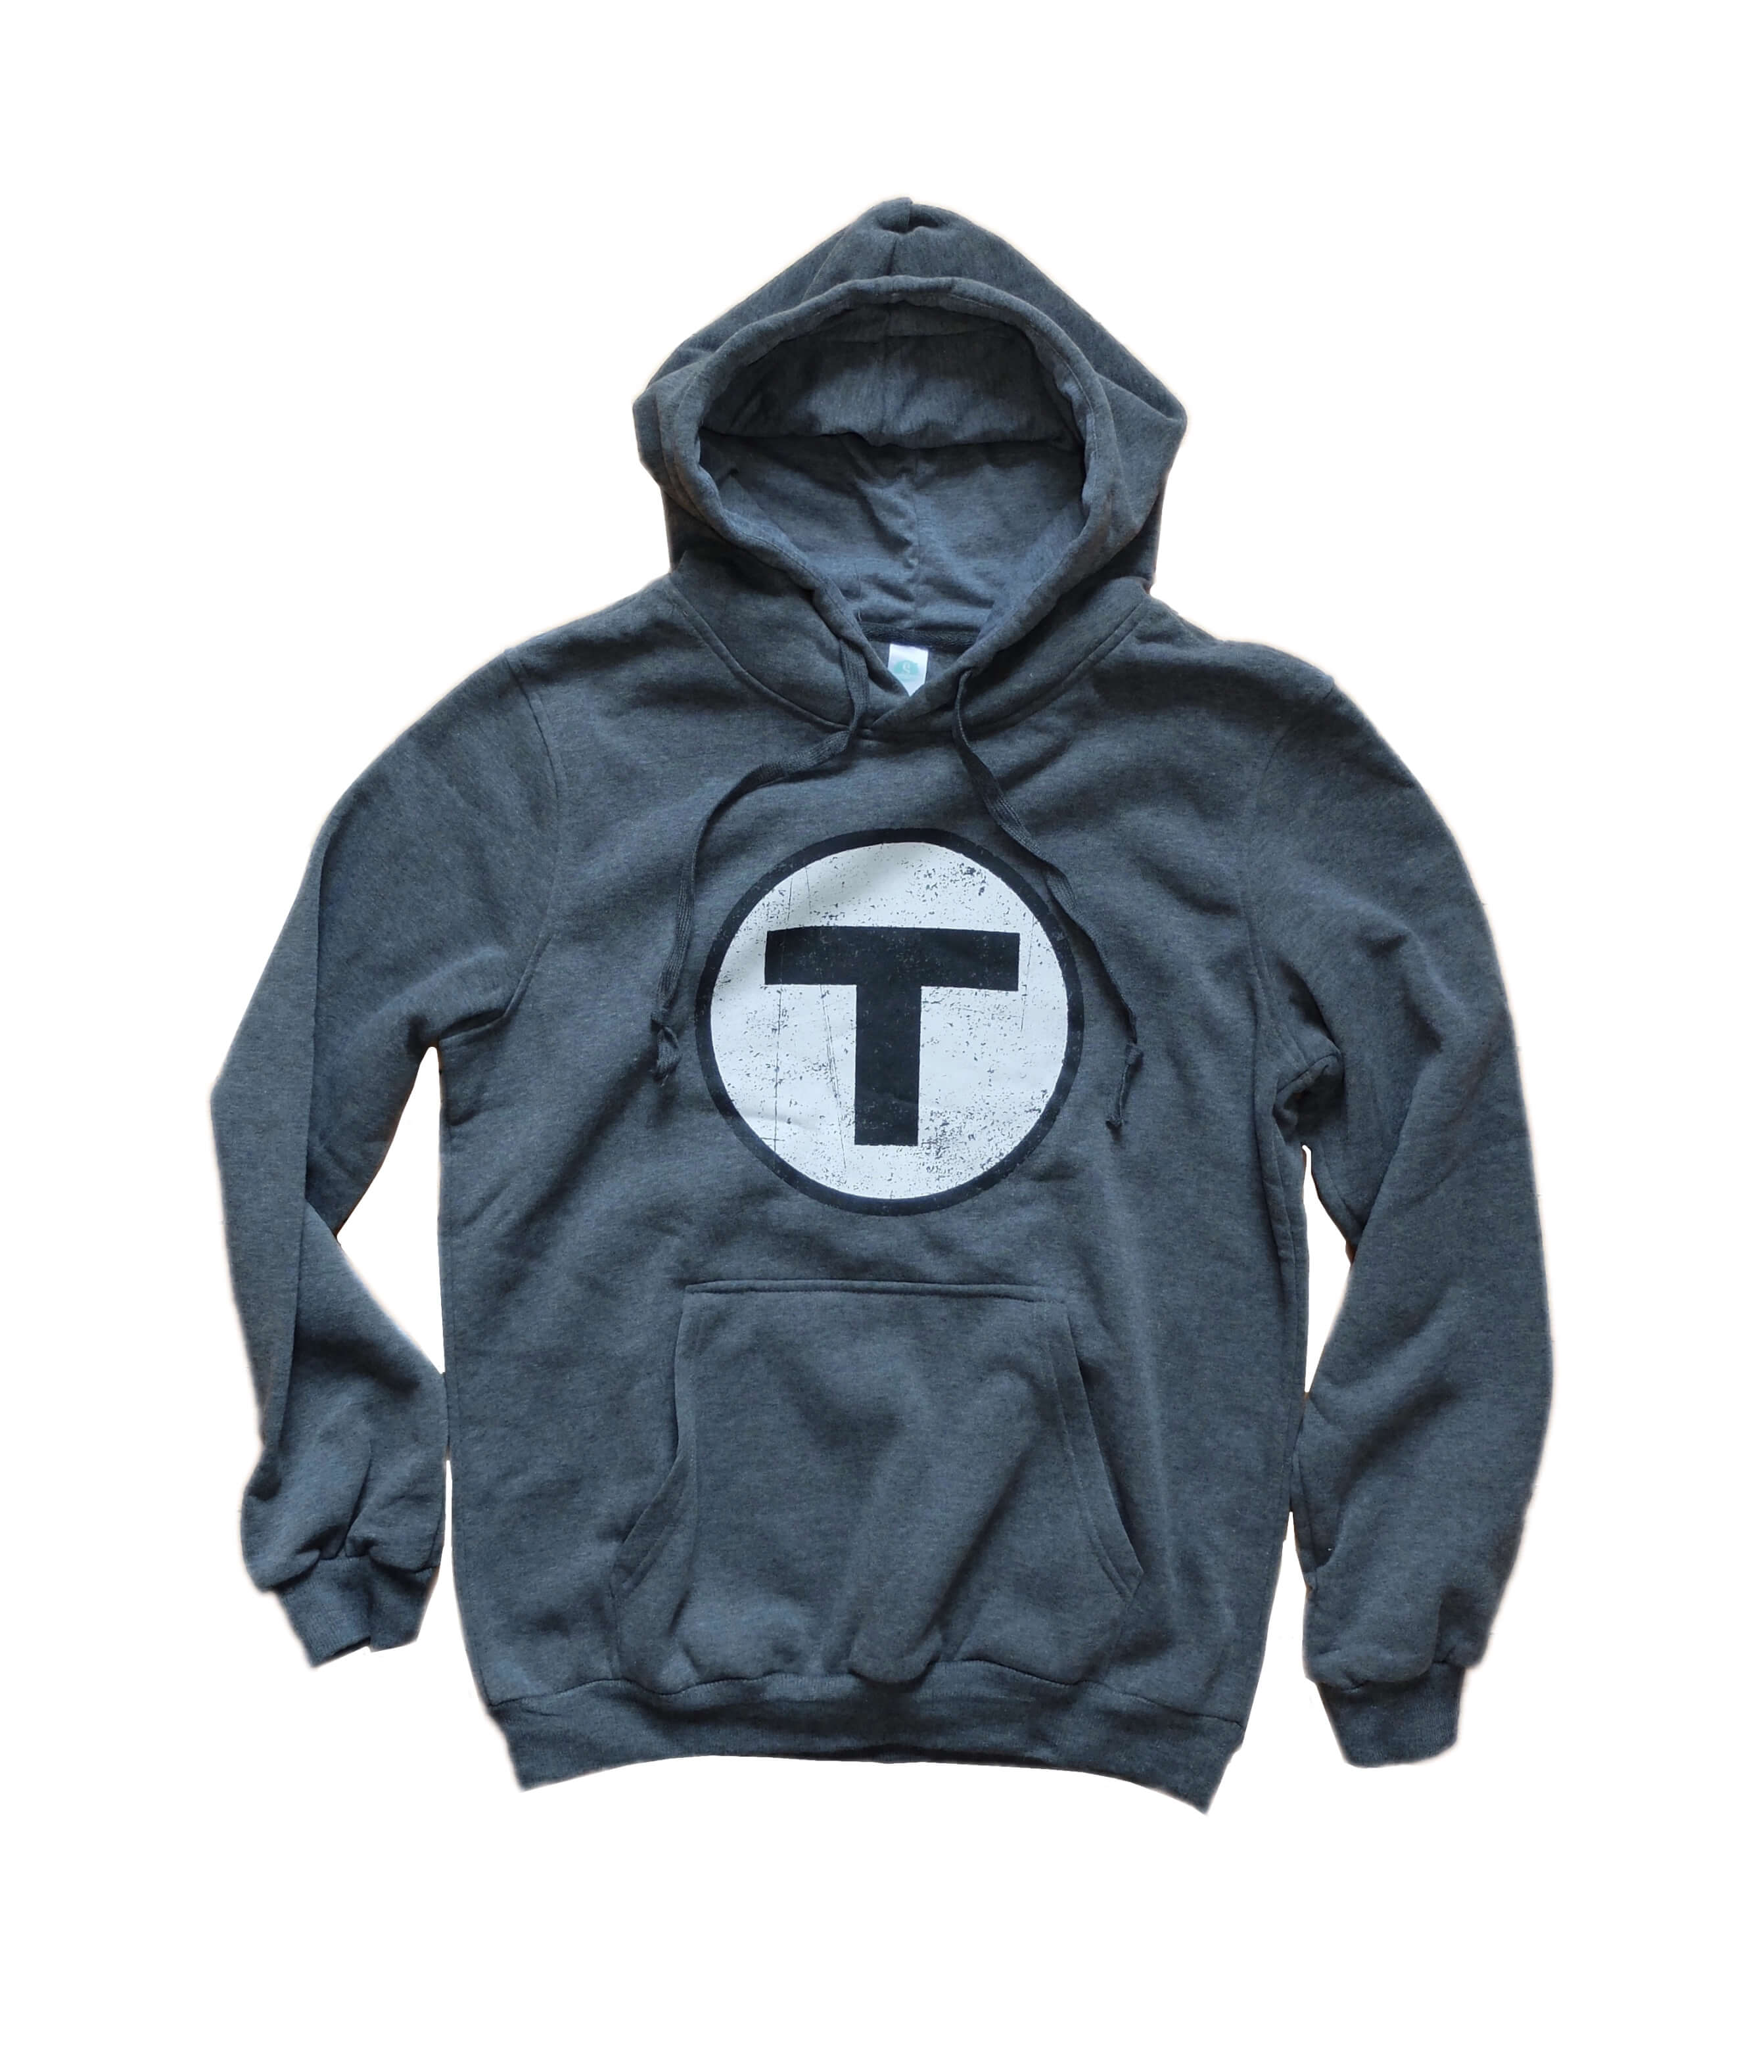 Adult T Logo Hoodie Sweatshirt - Charcoal Grey